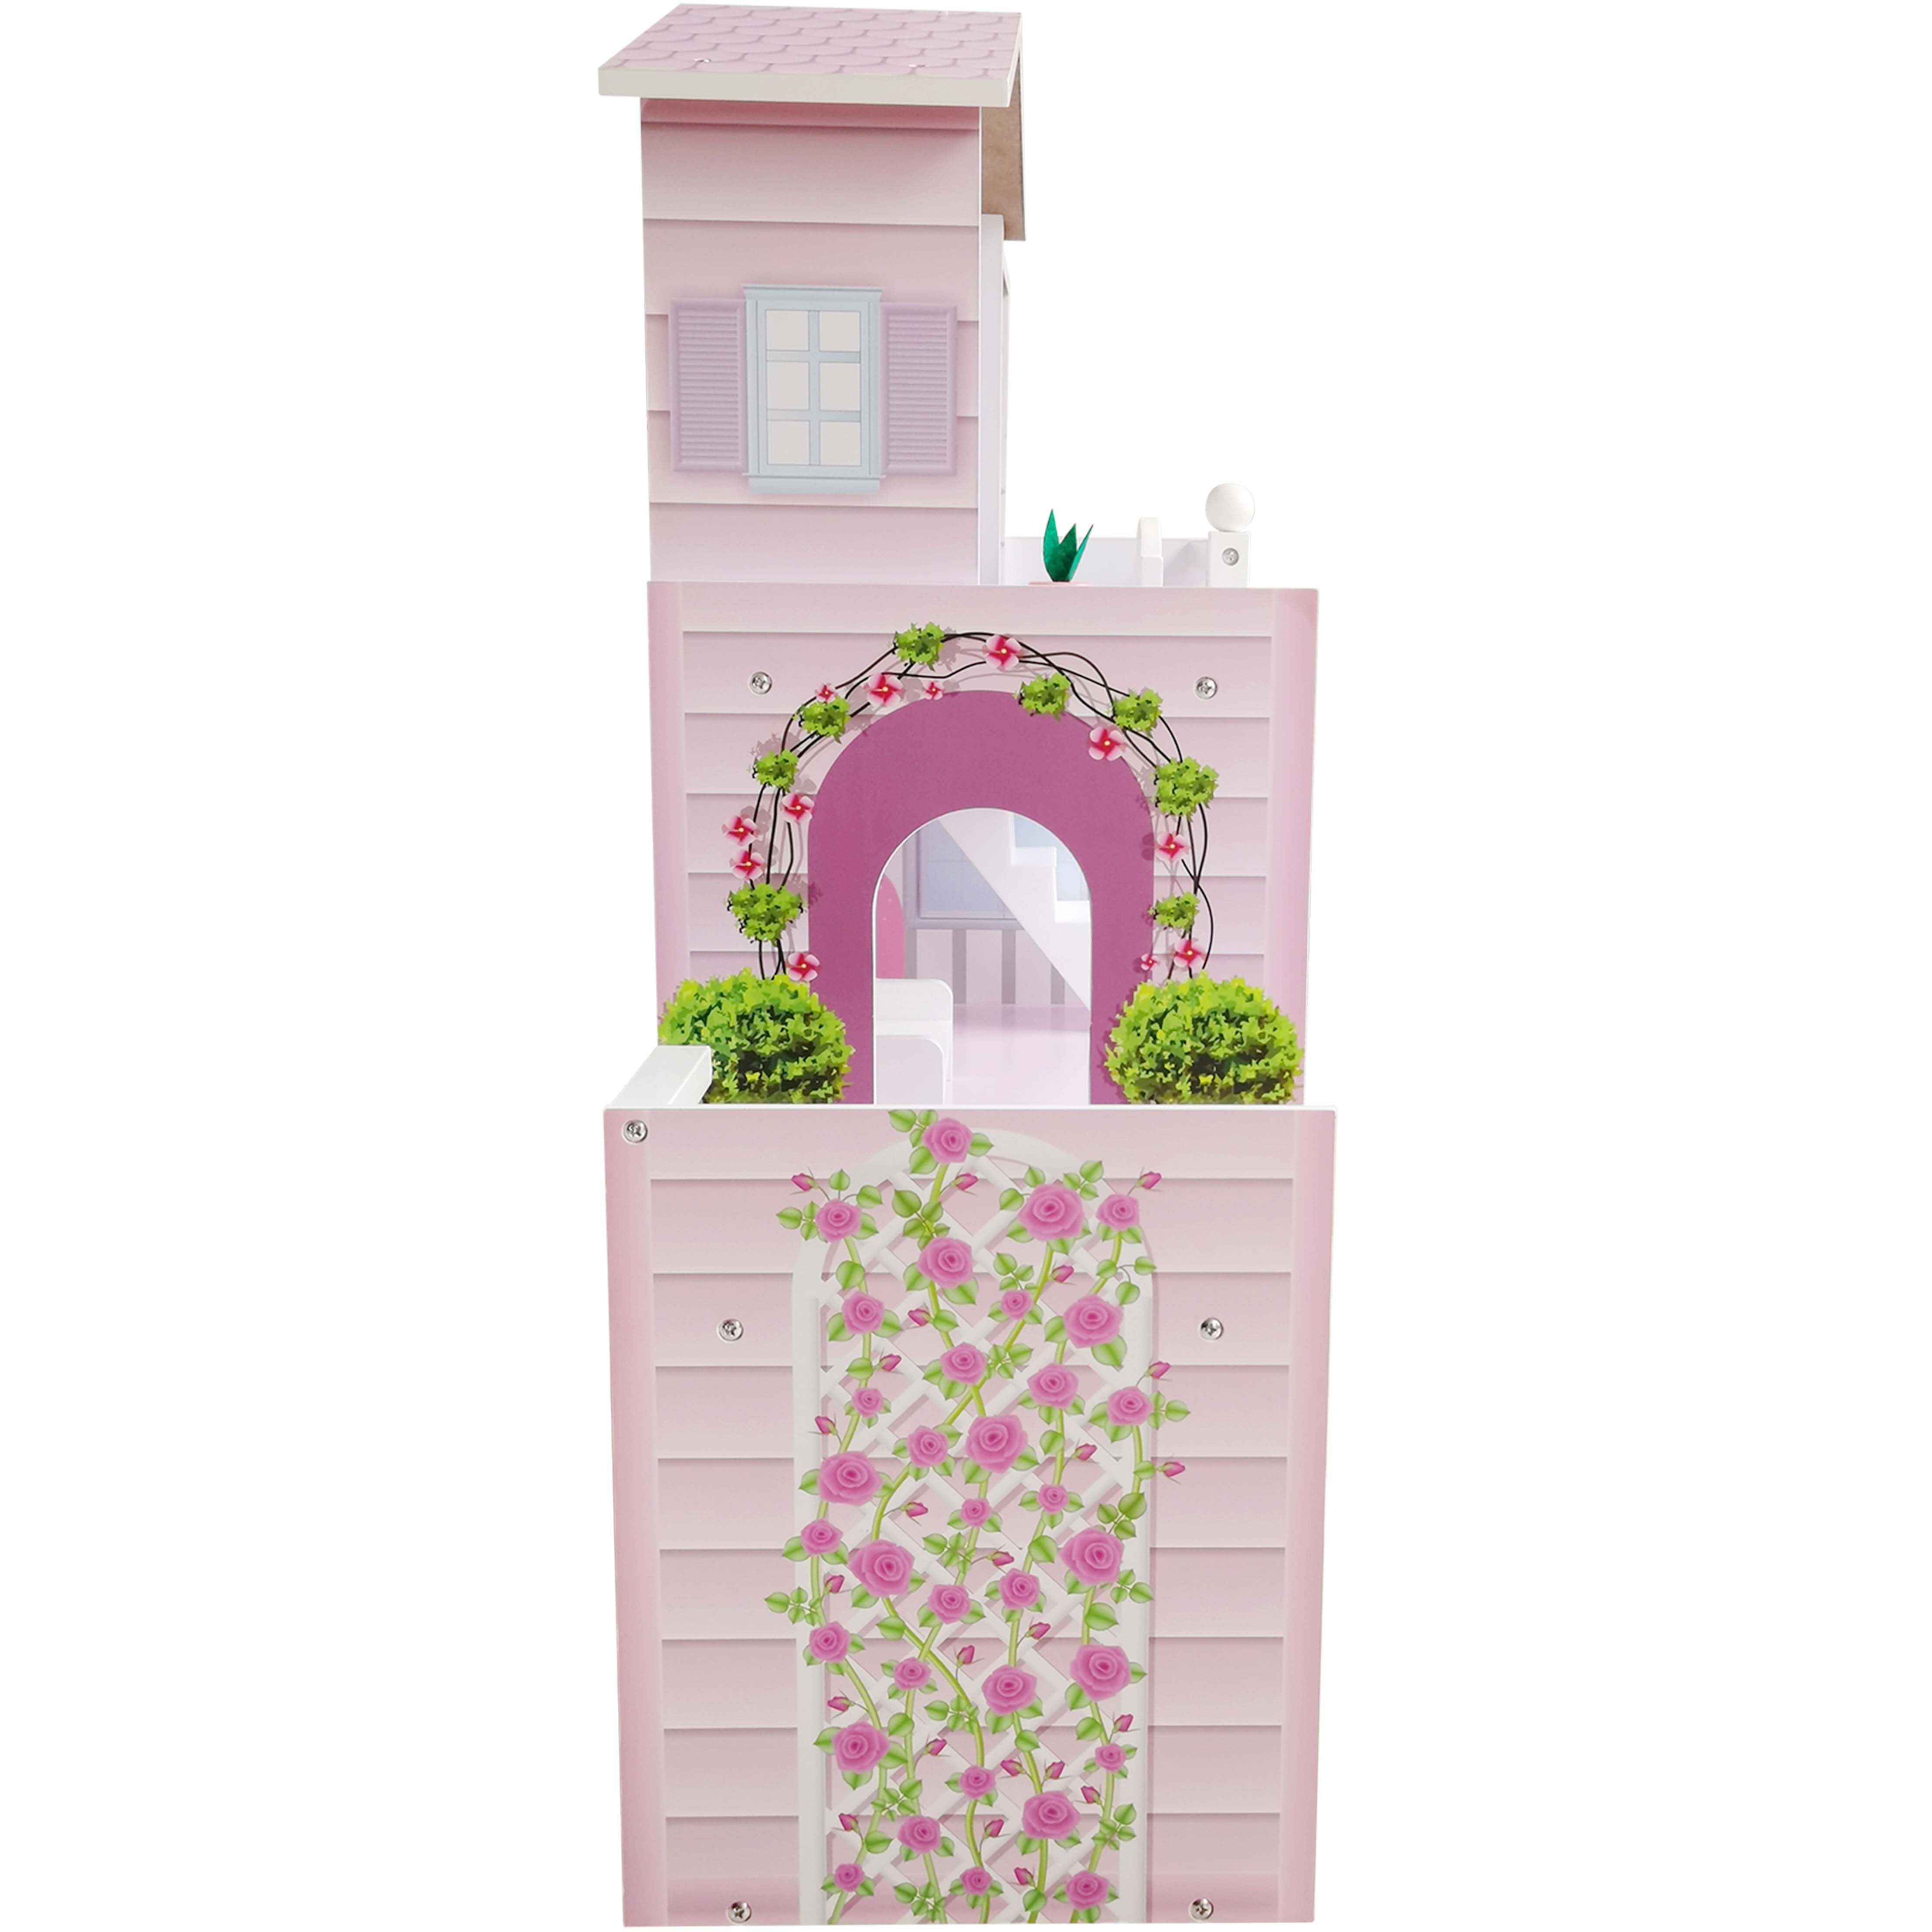 Іграшковий будиночок дерев'яний FreeON рожевий (47290) - фото 9